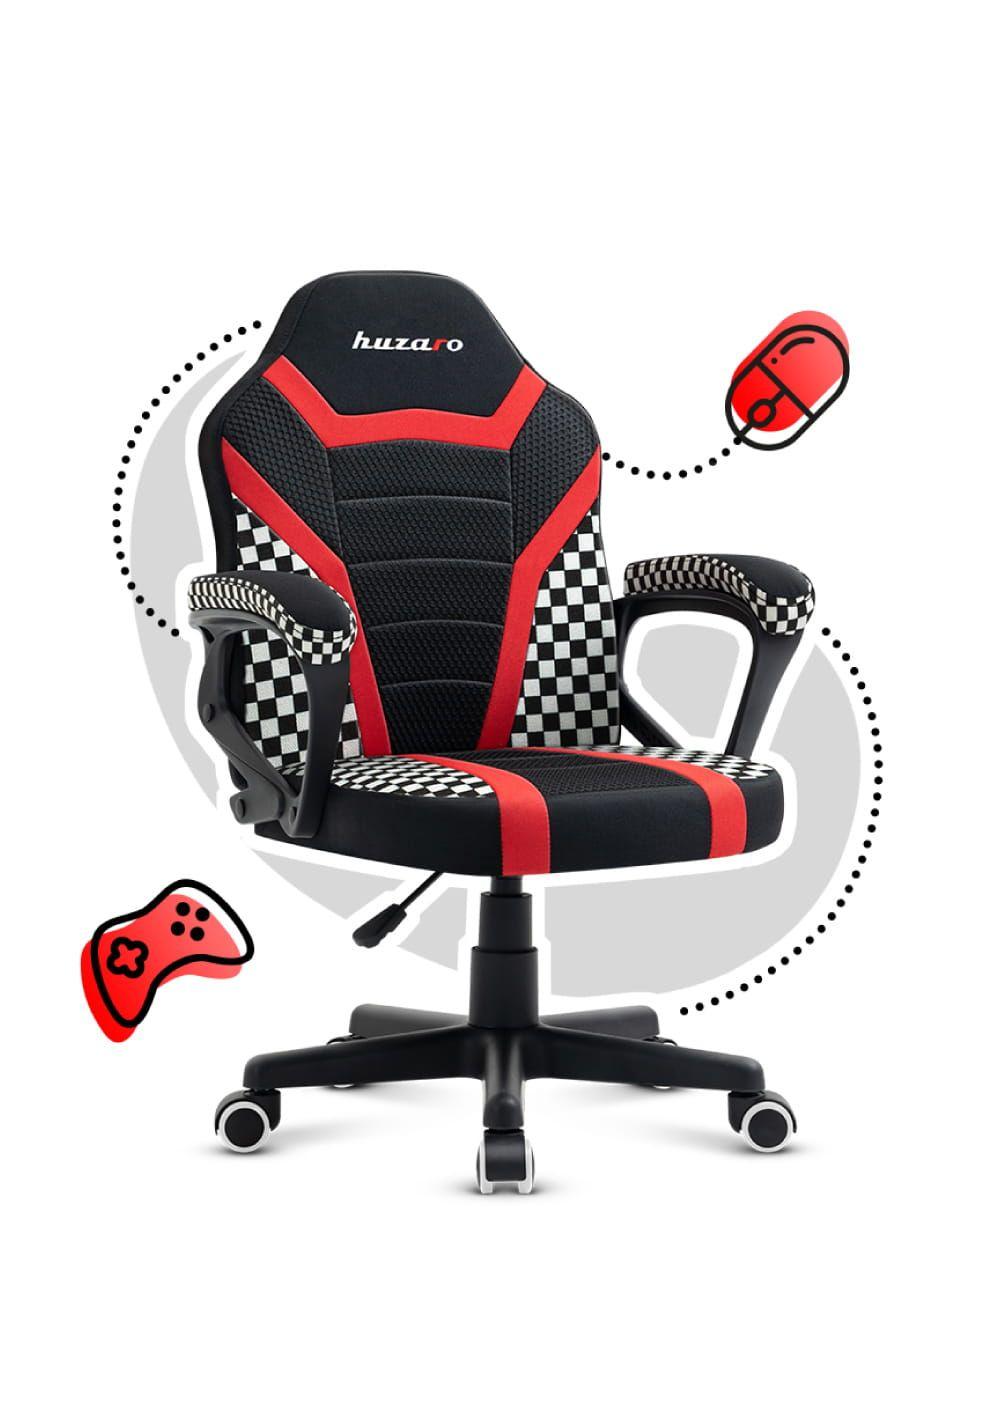 Gaming chair for children Huzaro Ranger 1.0 Red Mesh, black, red, white